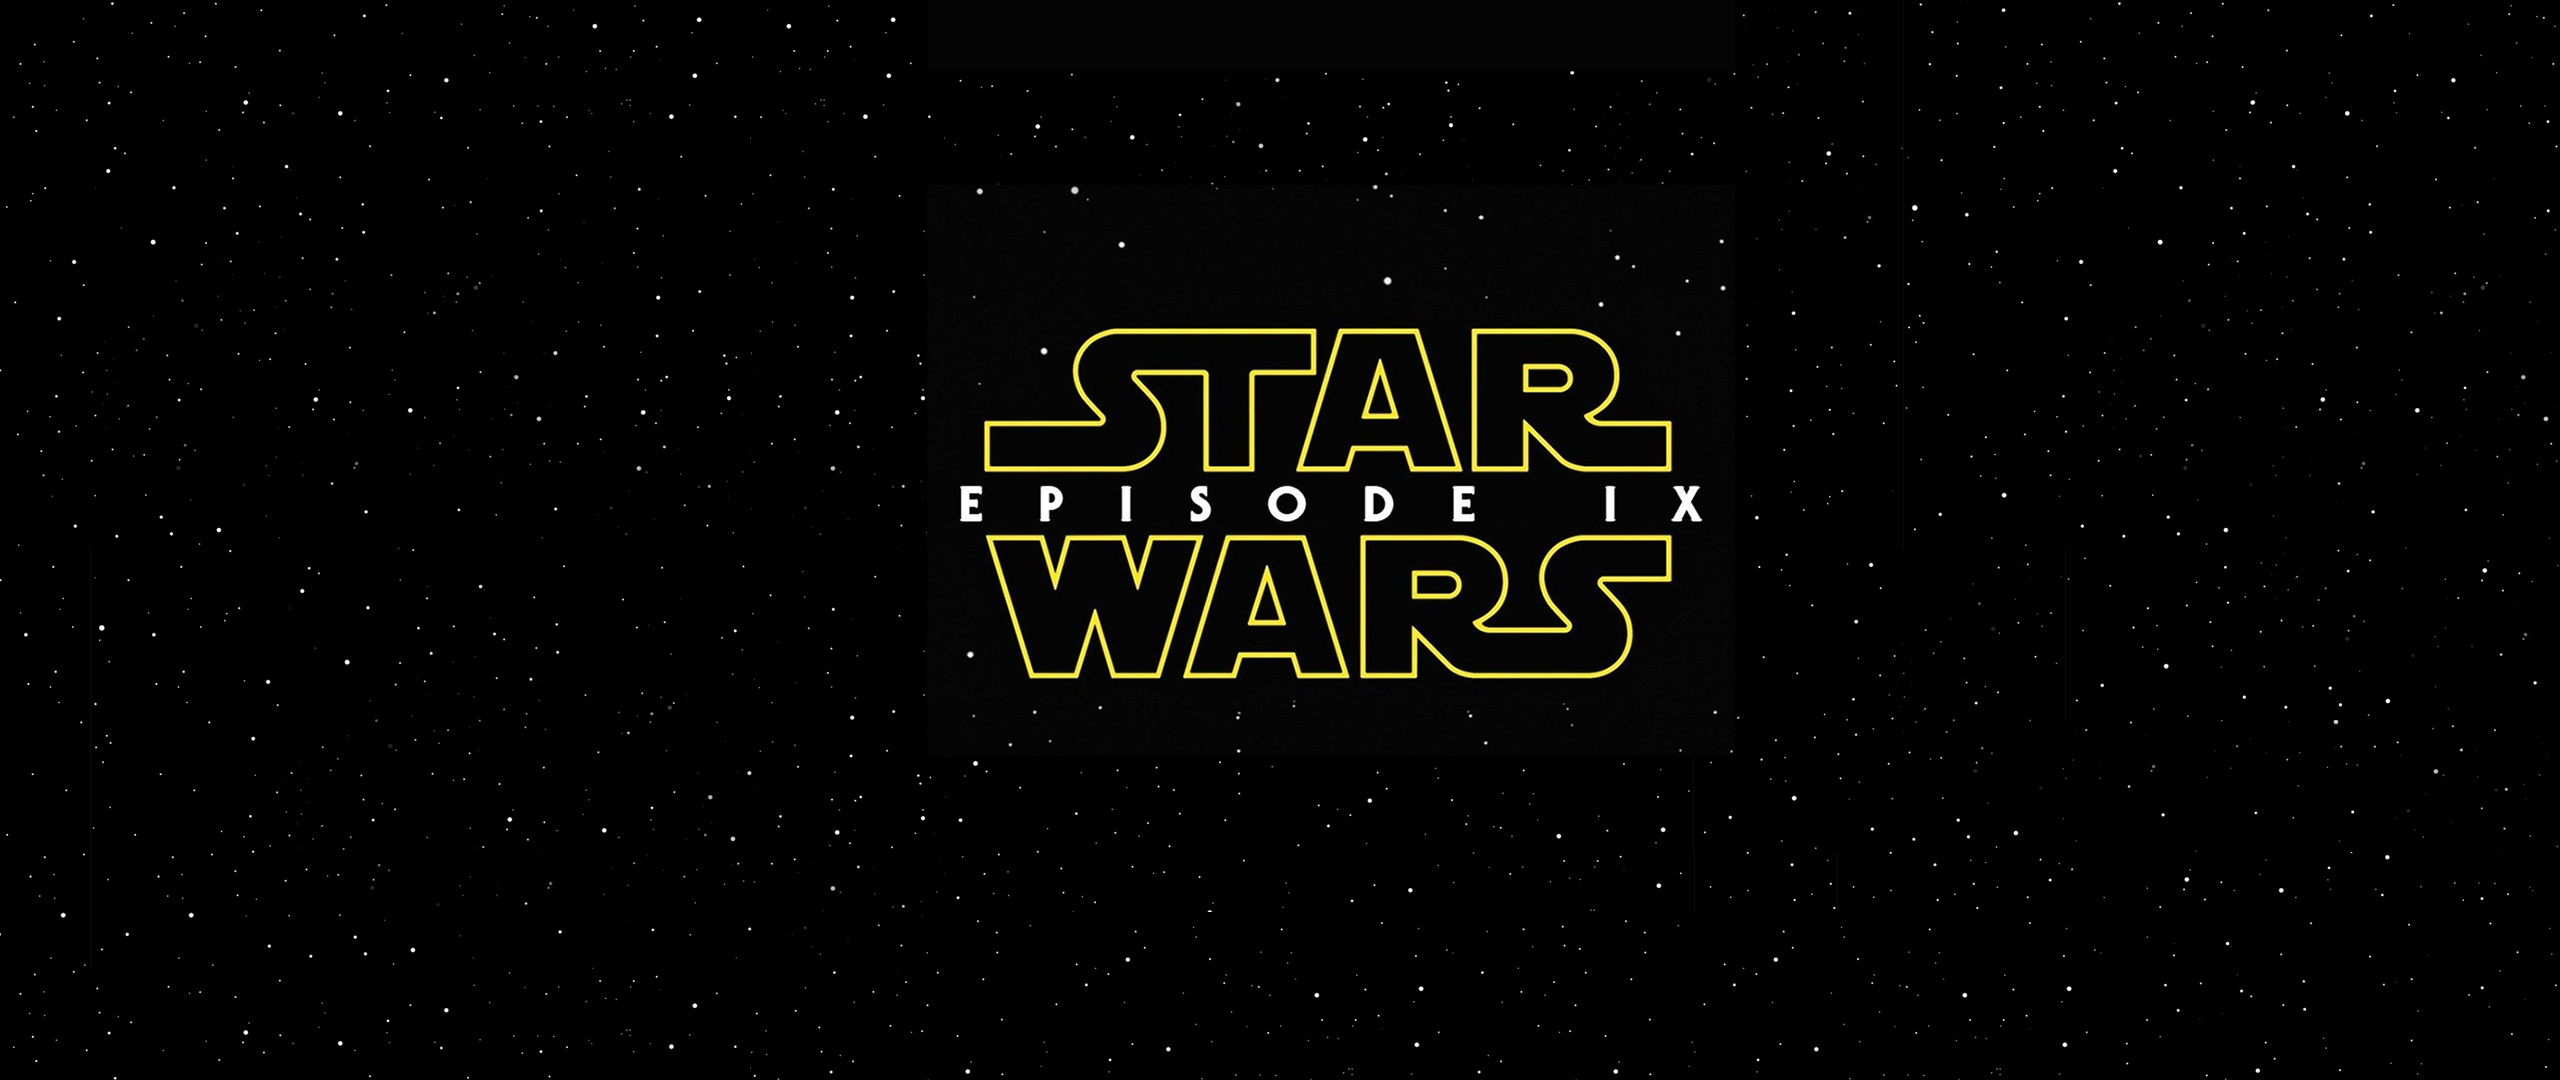 Star Wars Episode 9 wallpapers, 2560x1080 Dual Screen Desktop